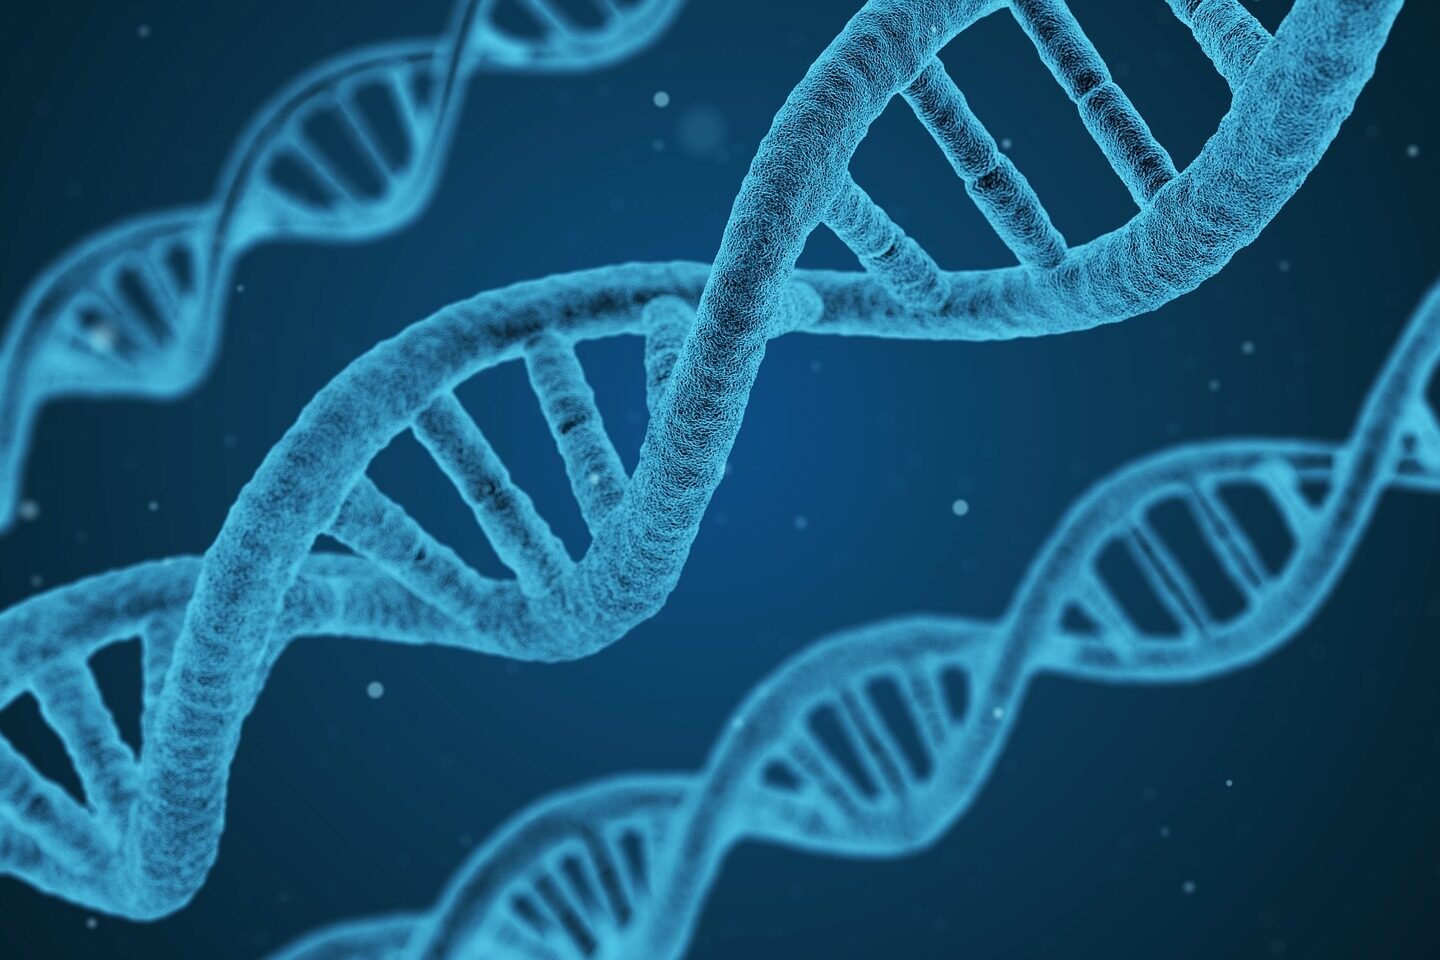 Abbildung von DNA-Strängen